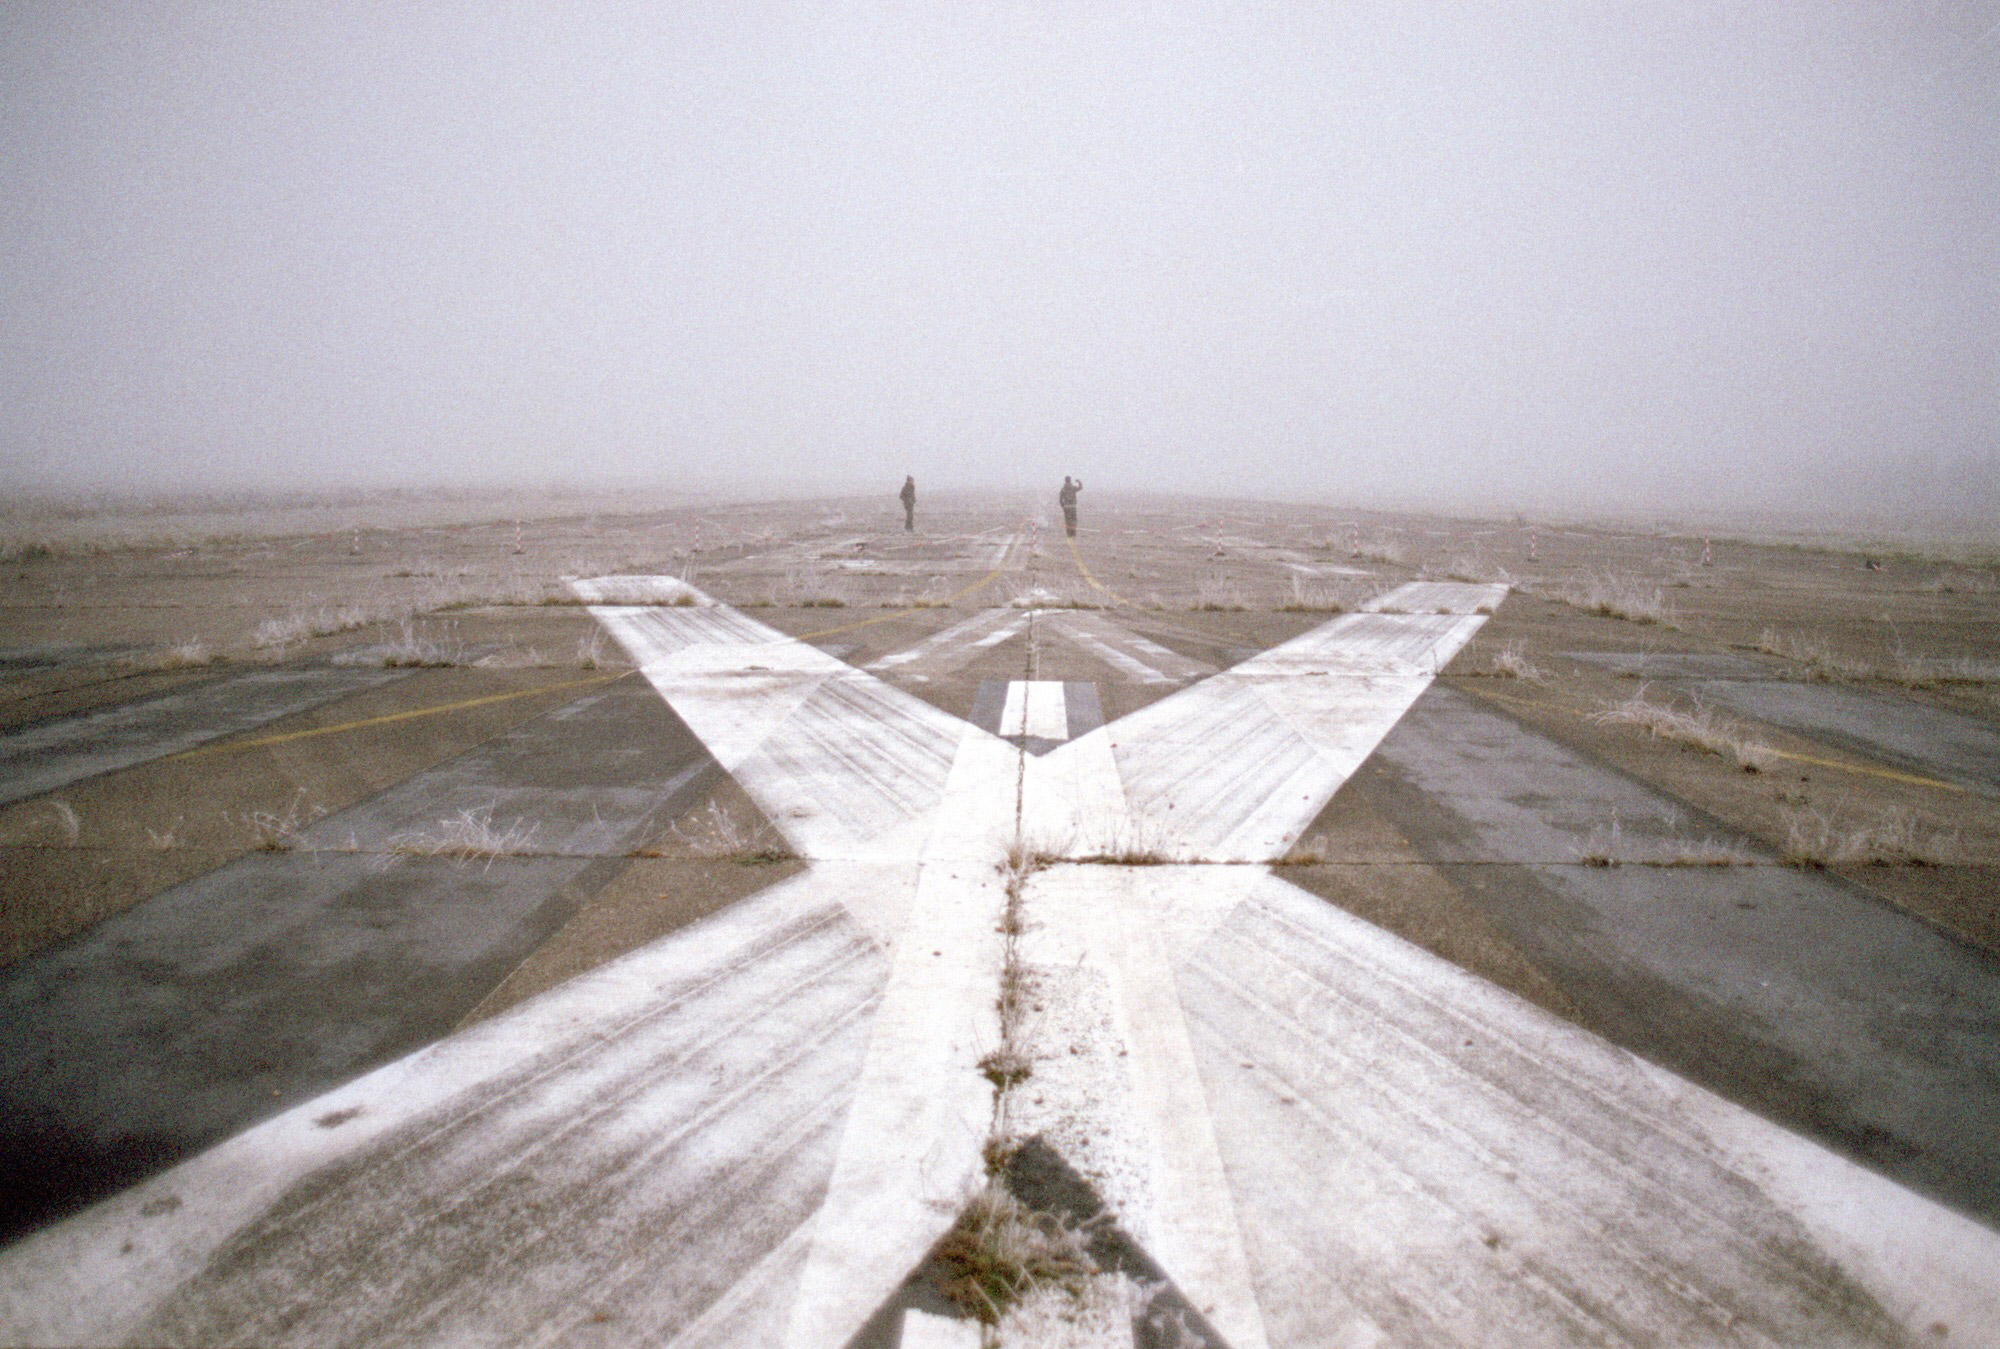 Mamytwink et Zecharia (au loin) sur la piste d'aterissage d'une base aérienne désafectée